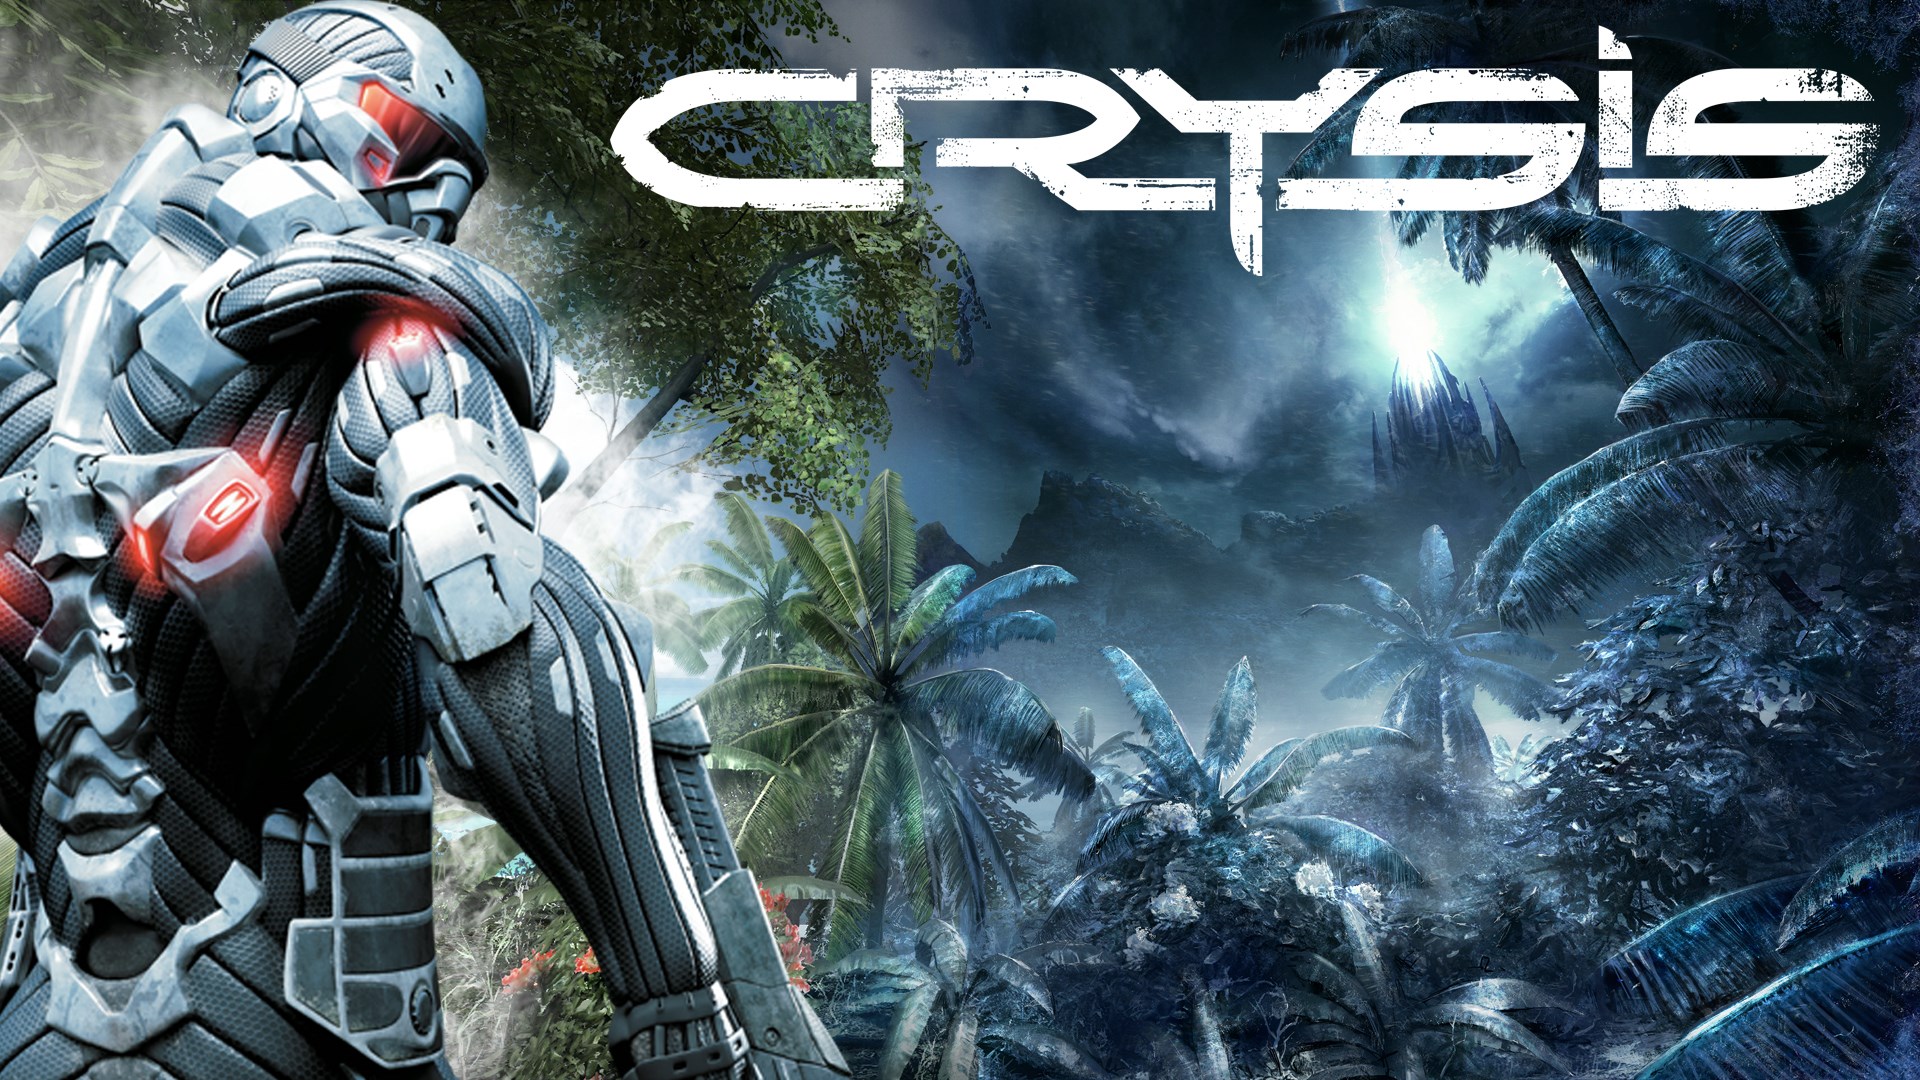 Crysis 1 PC Version Game Free Download